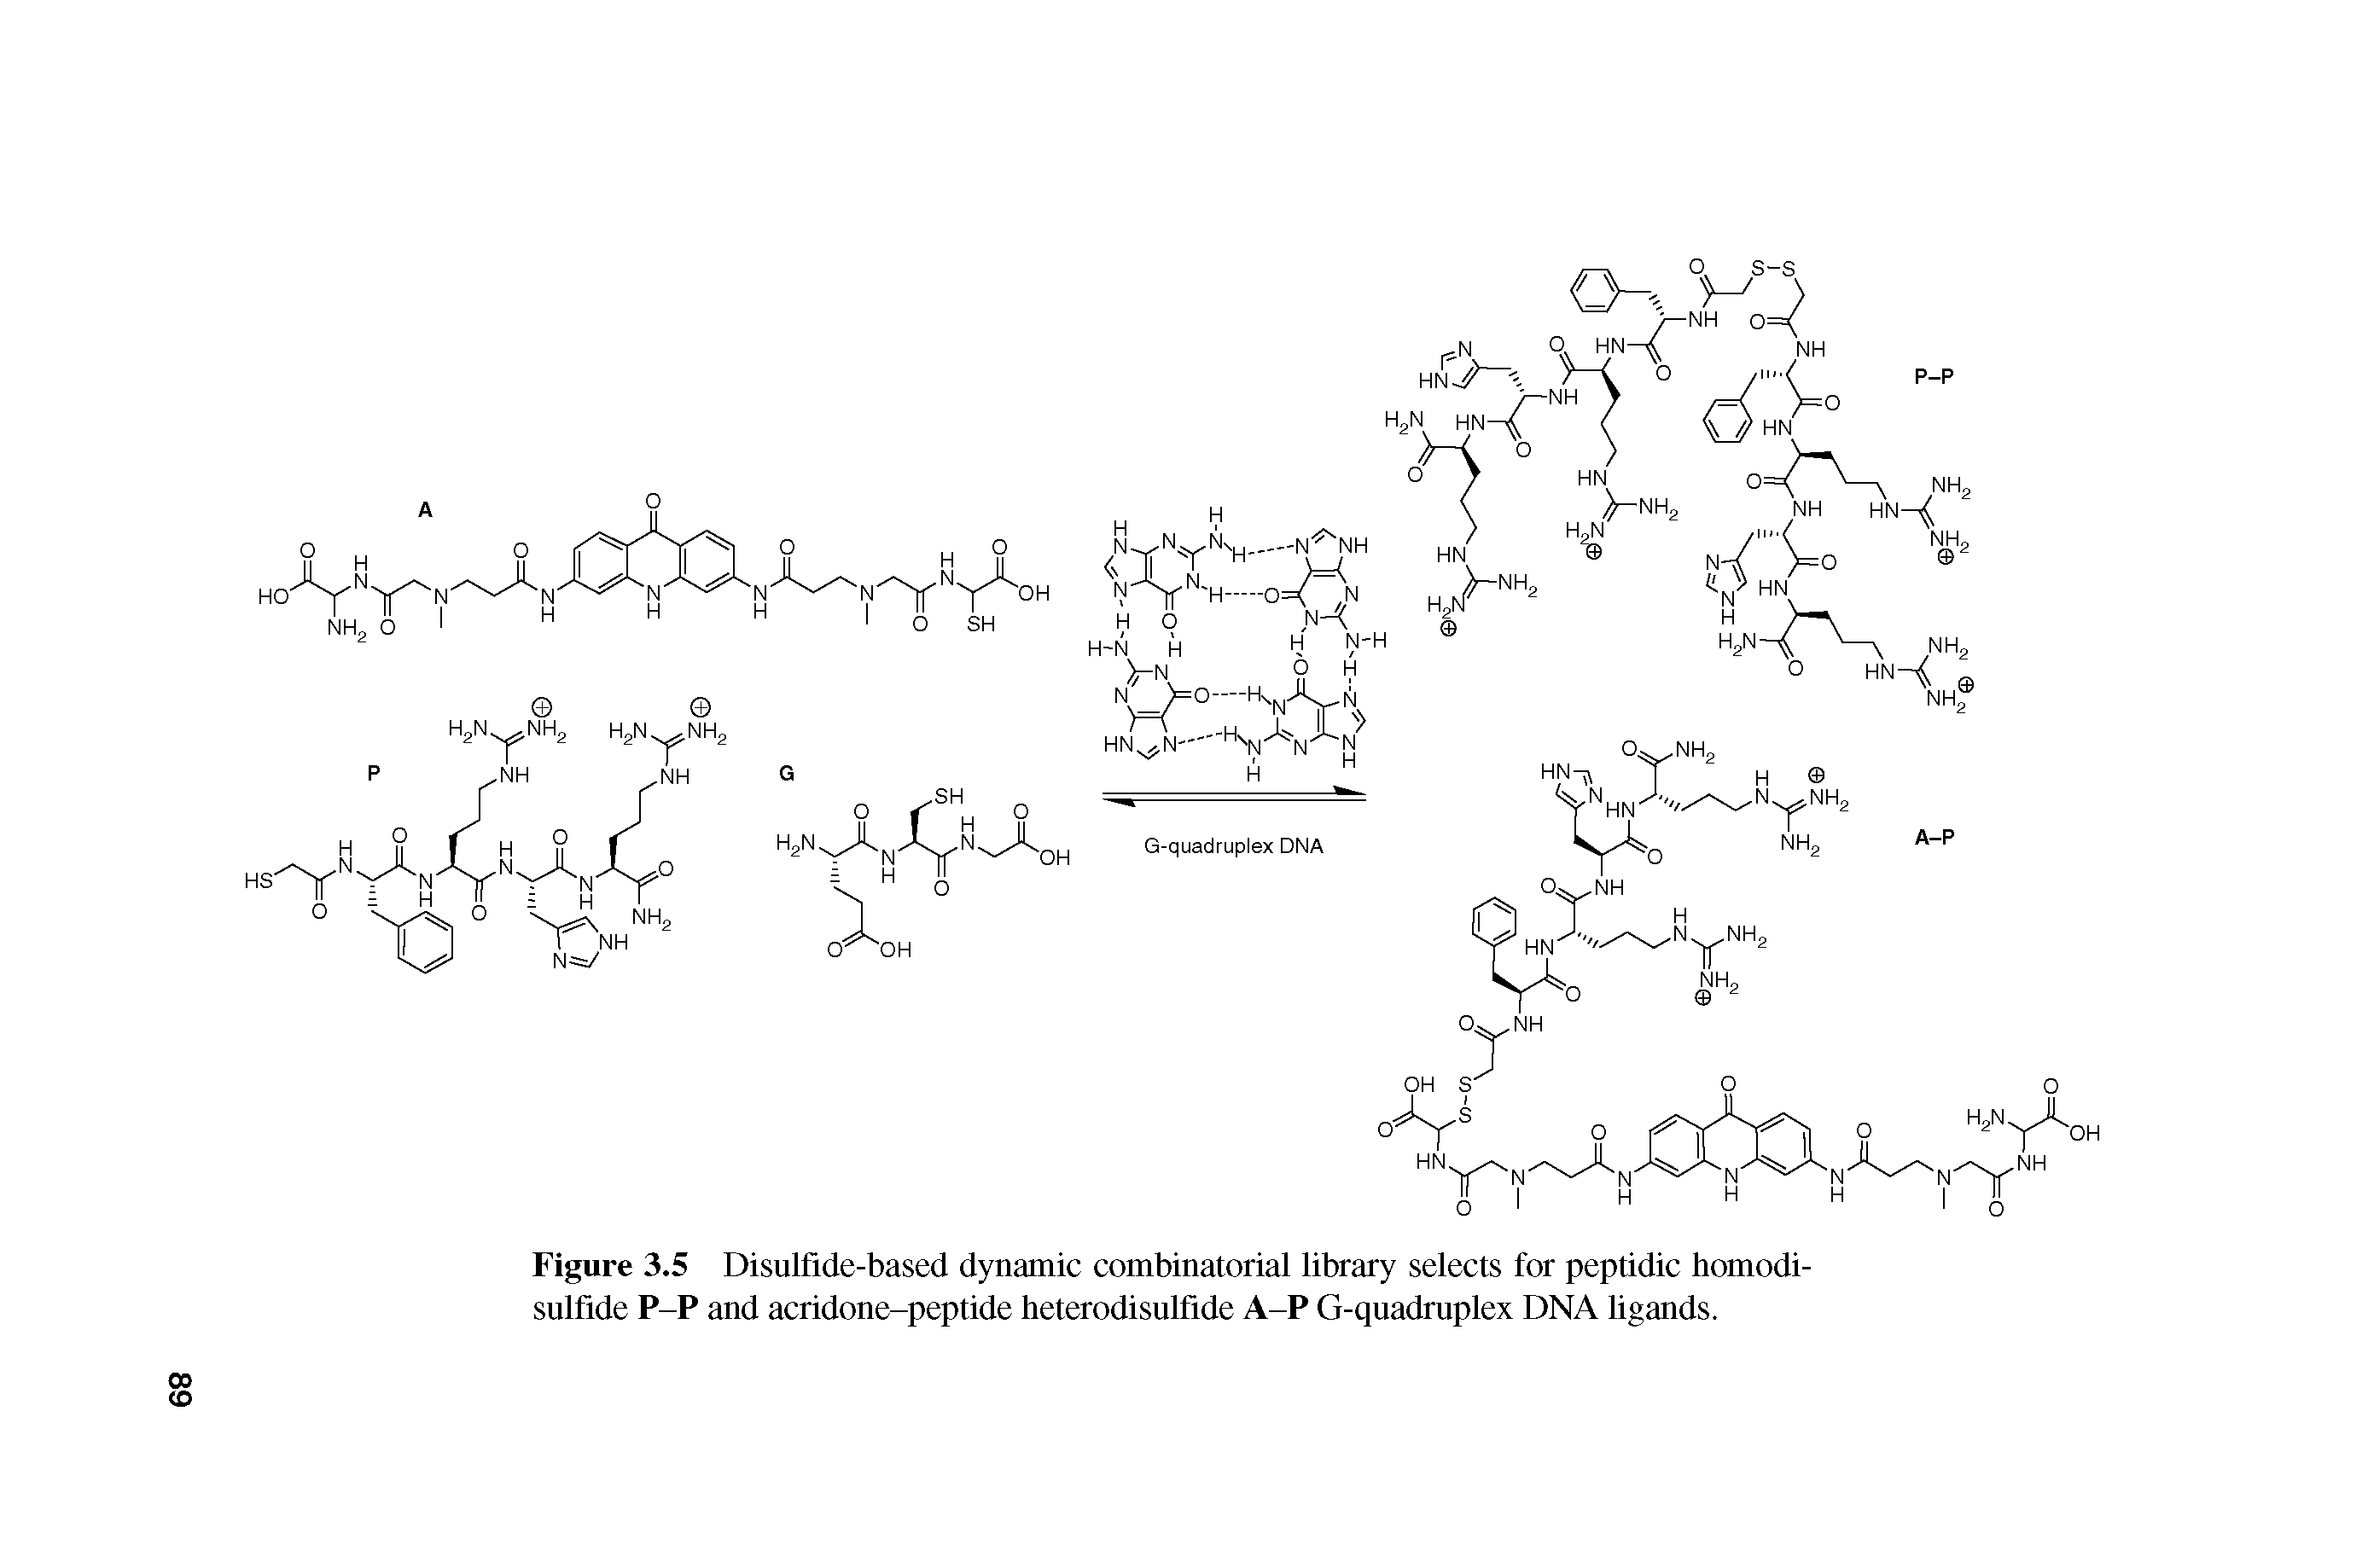 Figure 3.5 Disulfide-based dynamic combinatorial library selects for peptidic tiomodi-sulfide P-P and acridone-peptide heterodisulfide A-P G-quadruplex DNA ligands.